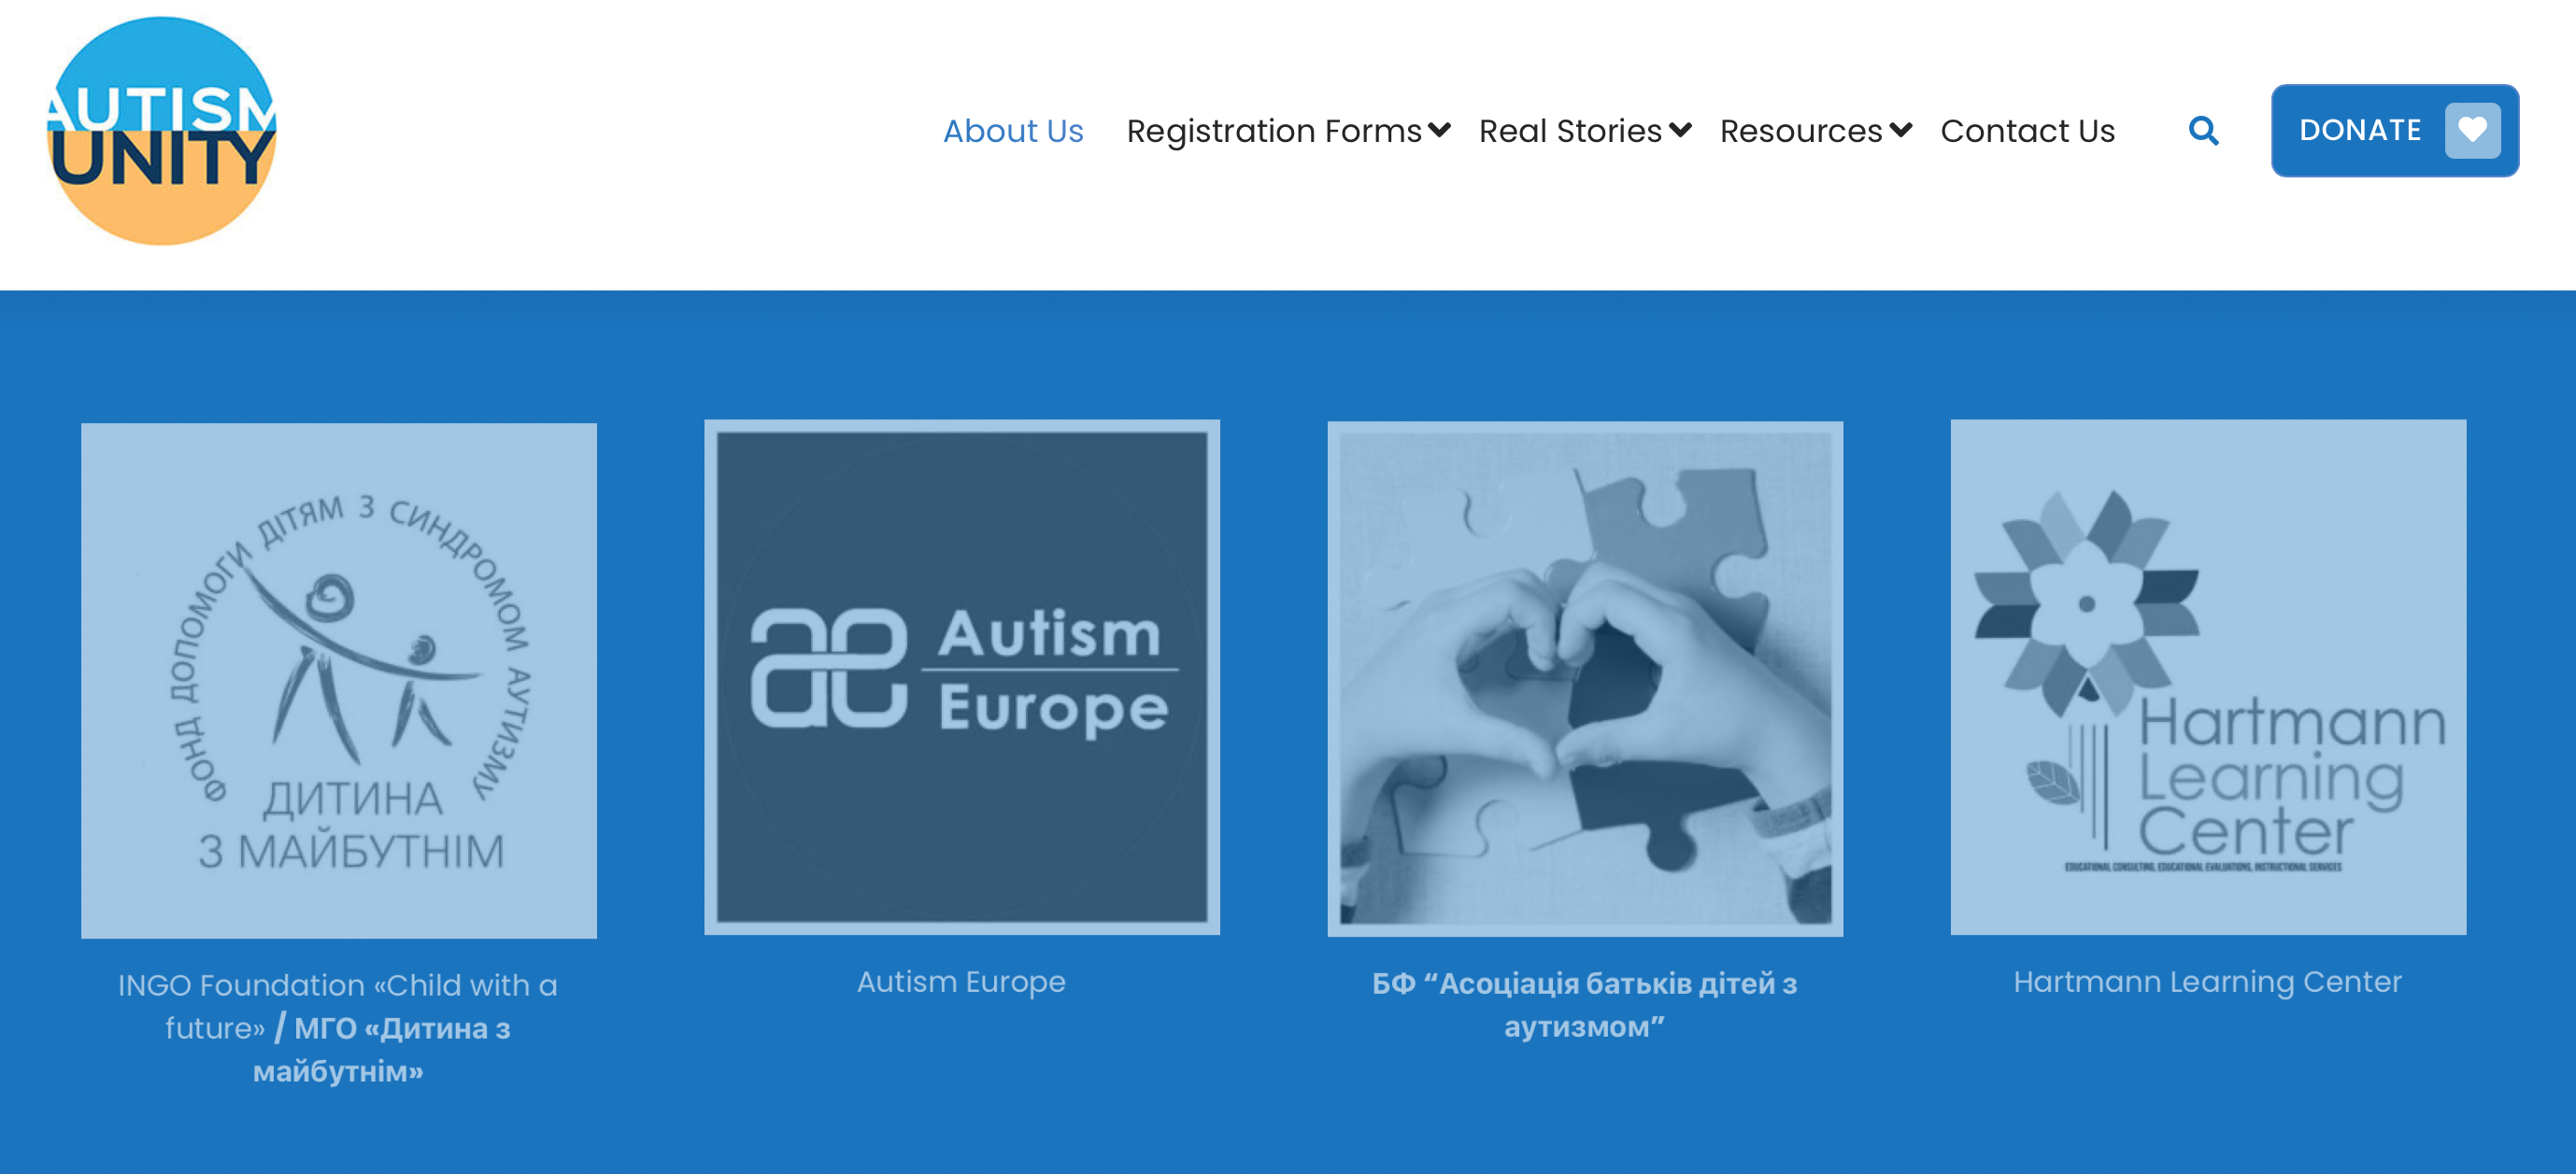 Над проєктом Autism Unity працює вся Європа: офіційне звернення до “Аутизм Європа”